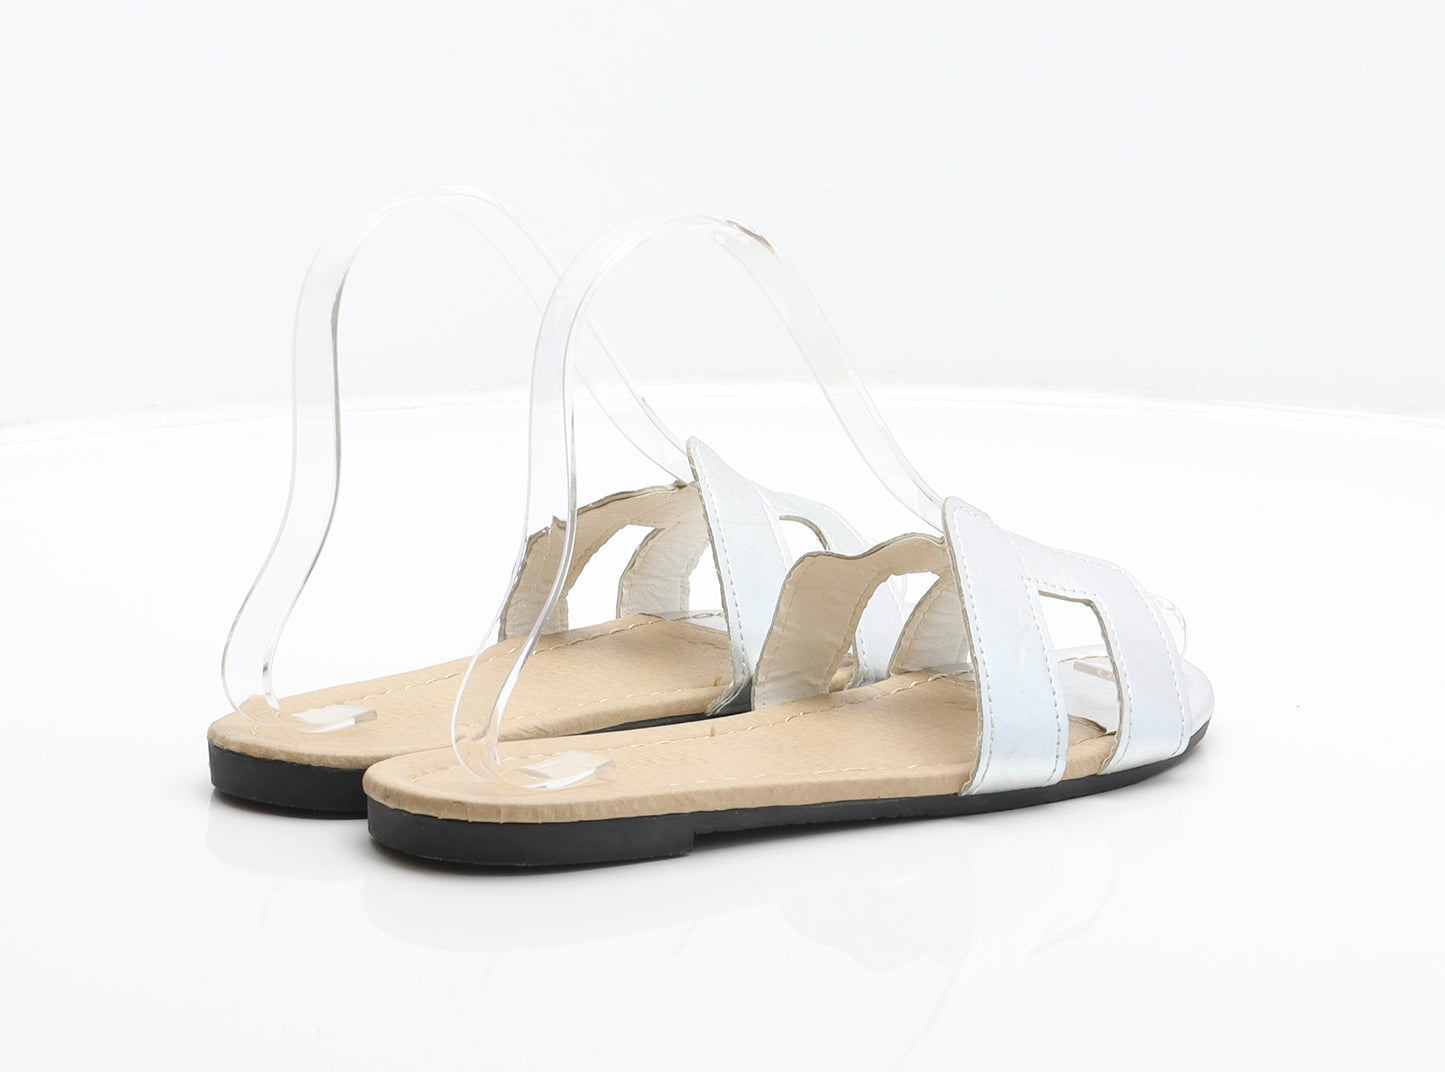 Preworn Womens Silver Synthetic Slider Sandal UK 5 38